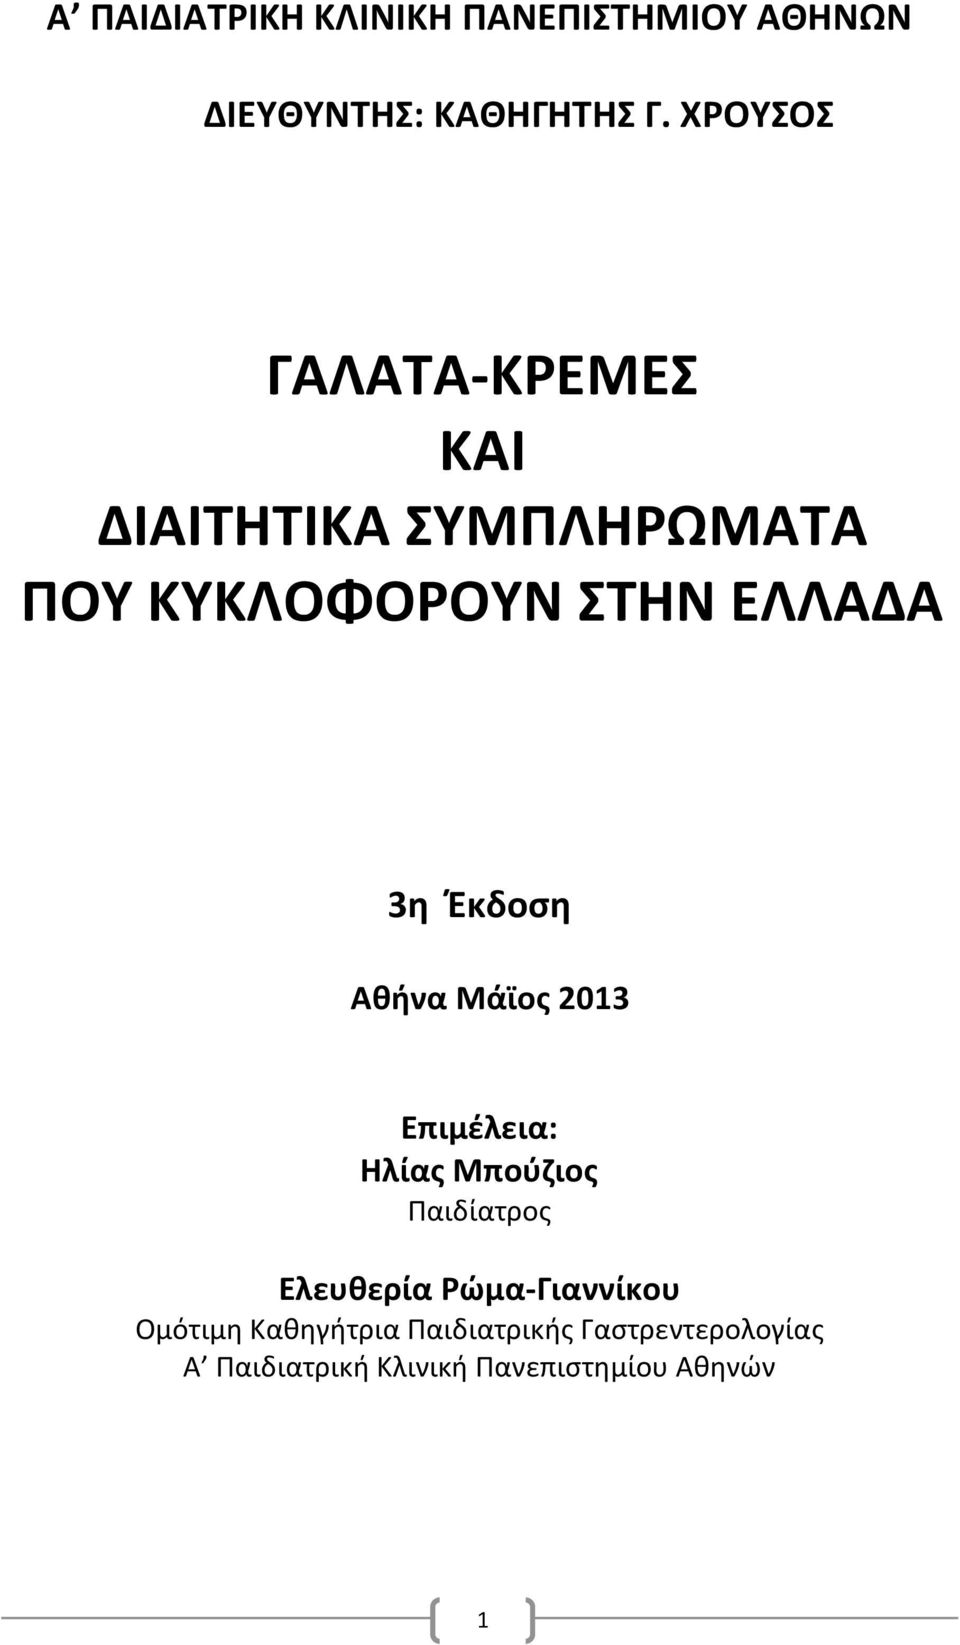 Ζκδοςθ Ακινα Μάϊοσ 2013 Επιμζλεια: Θλίασ Μποφηιοσ Παιδίατροσ Ελευκερία